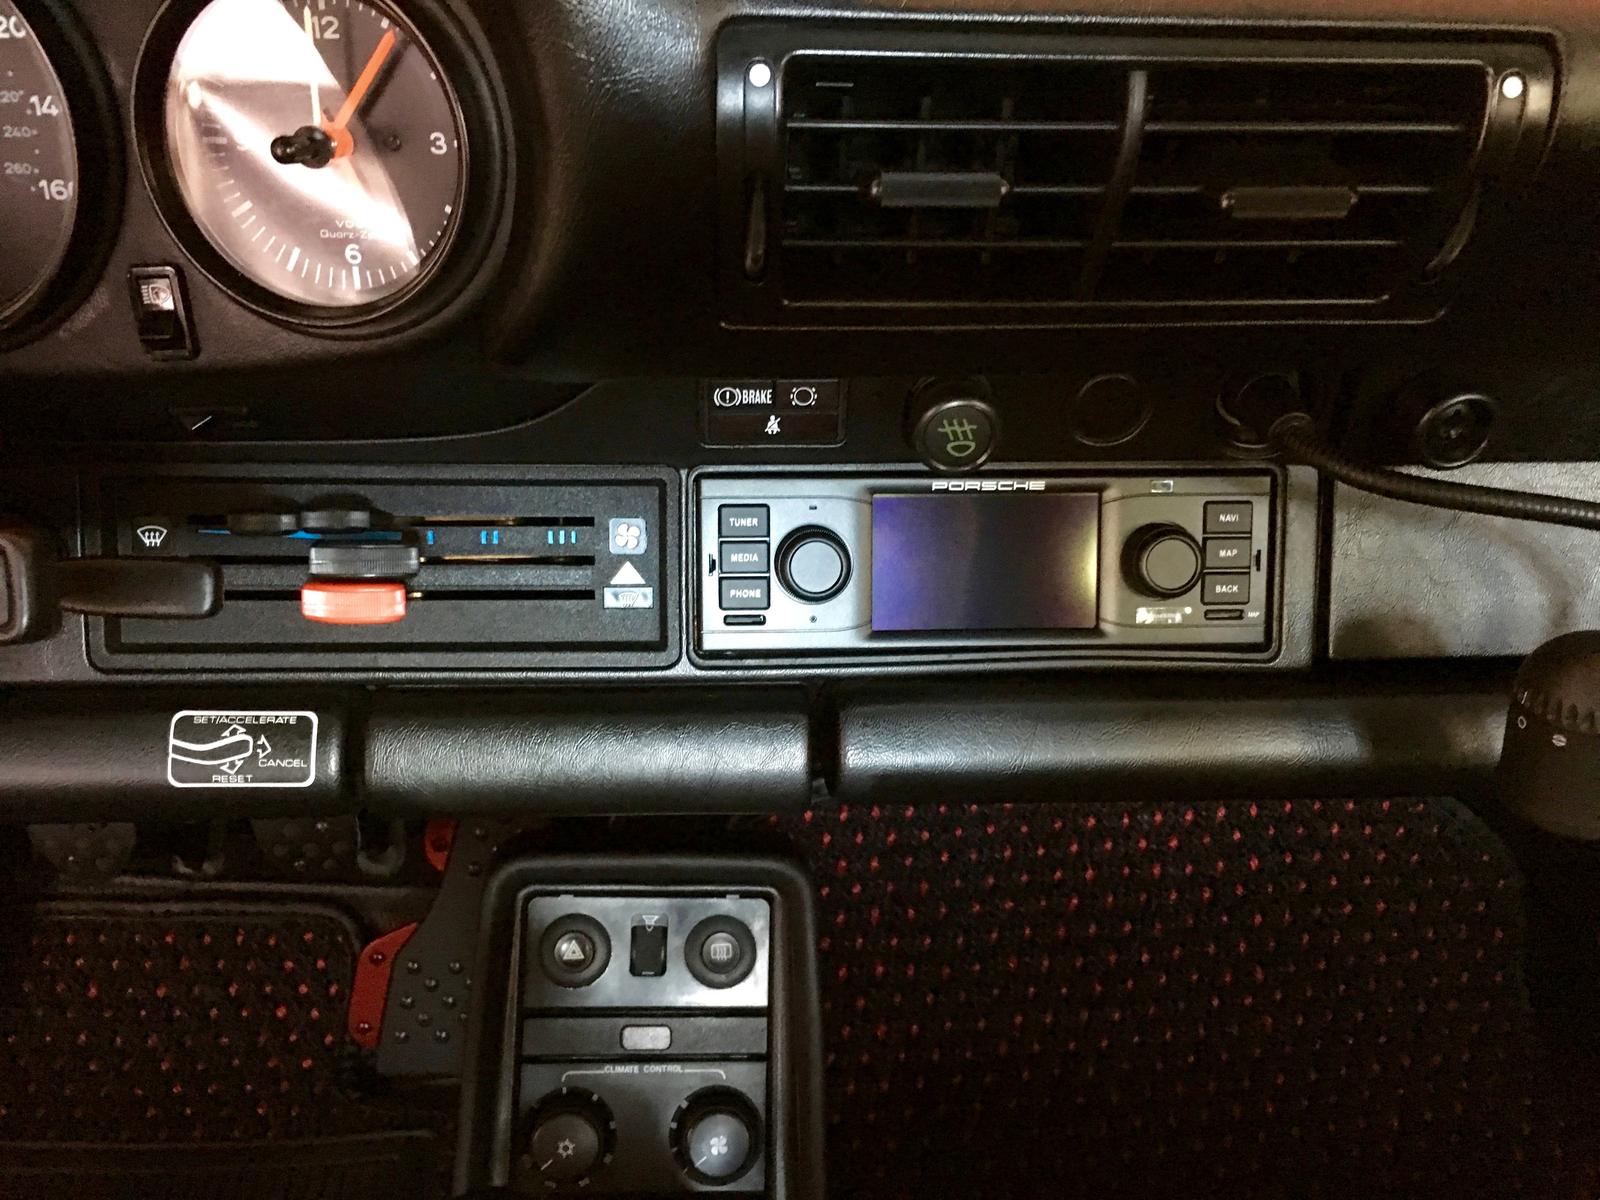 Porsche classic radio navigation system - Rennlist - Porsche Discussion  Forums